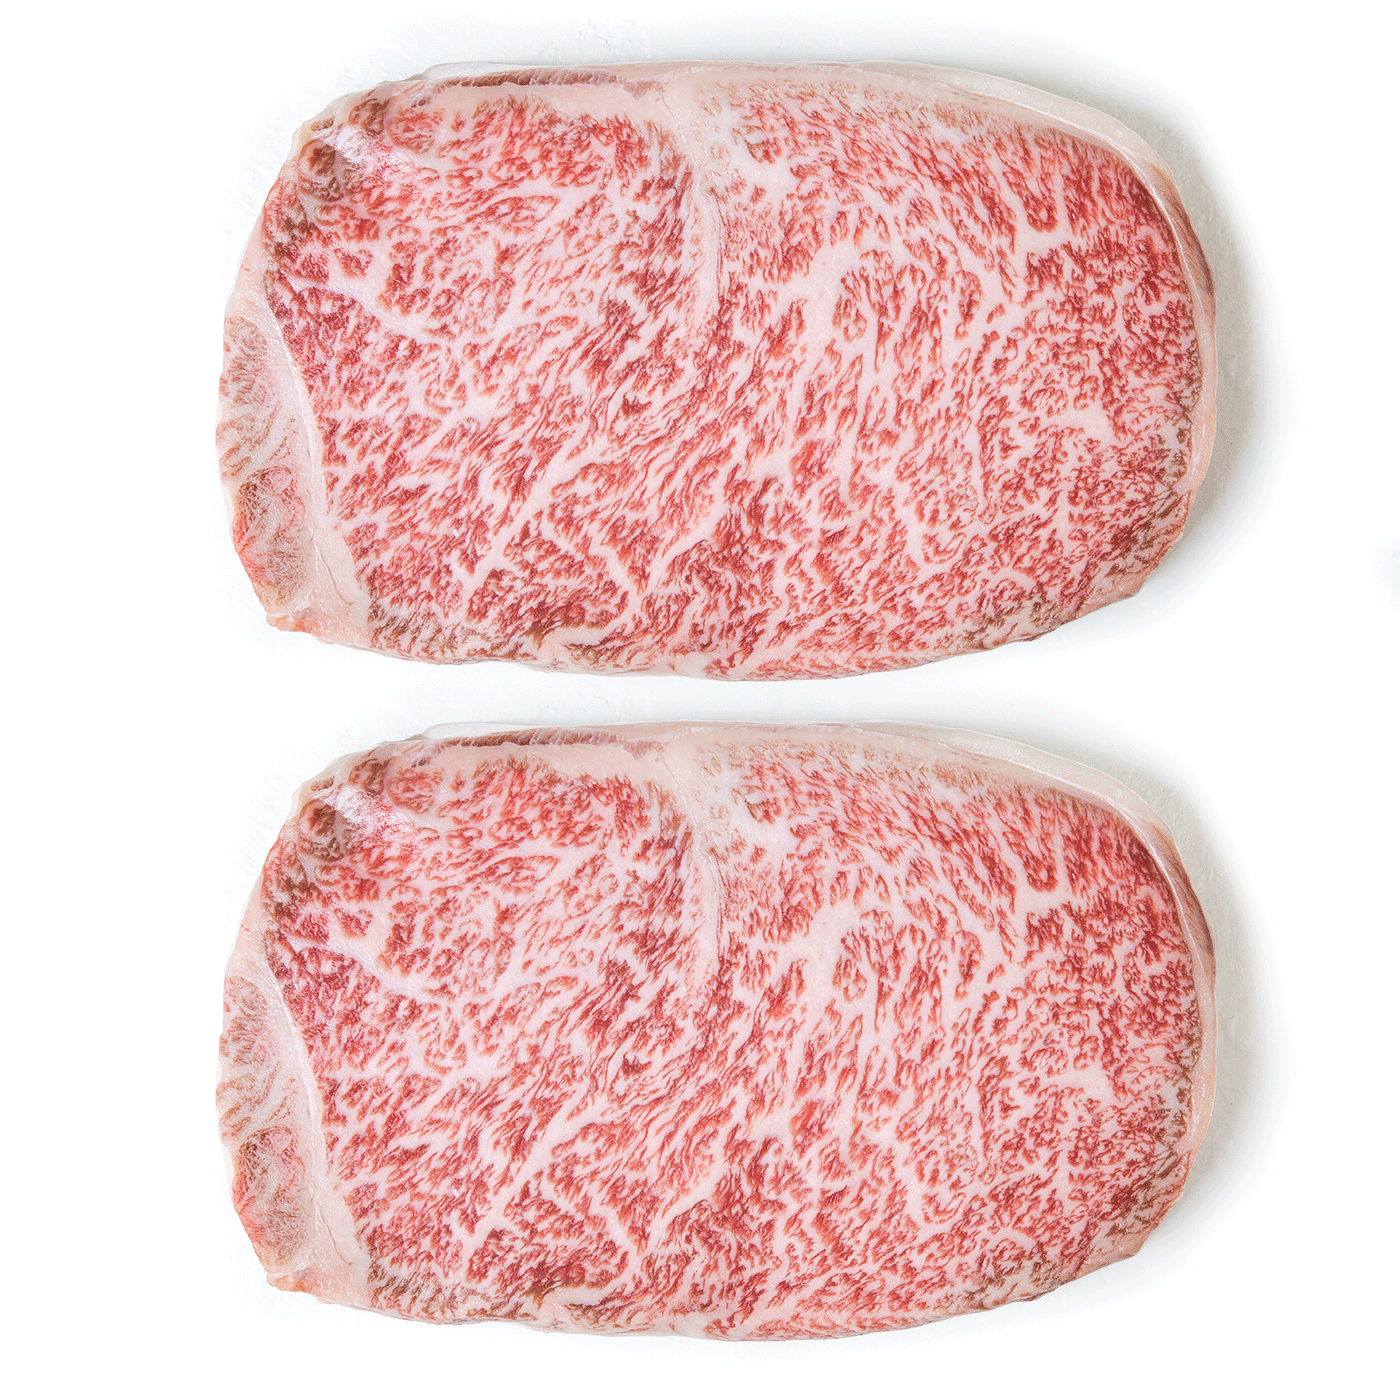 MiyazakiGyu Striploin, Two Steaks, 10 oz each